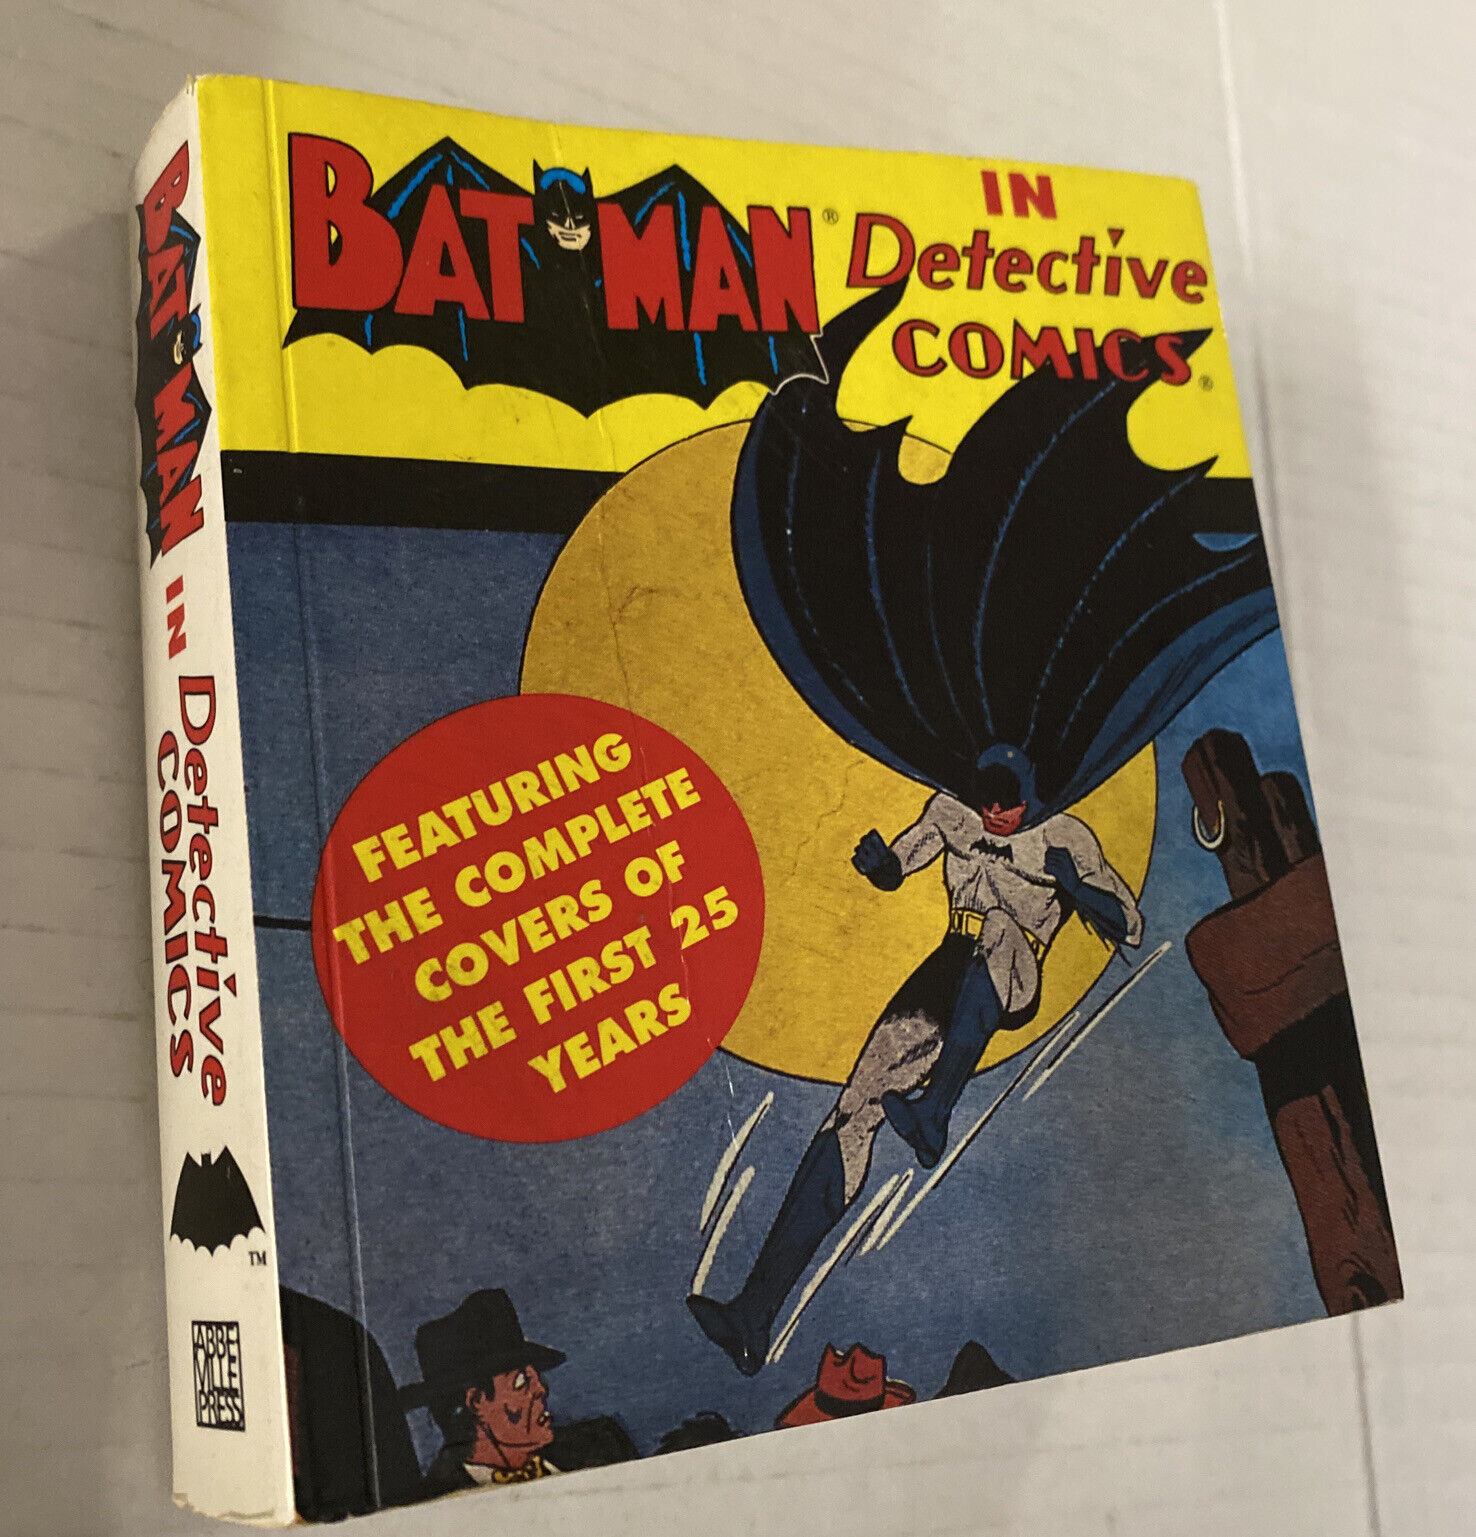 Vintage 1990s Batman Detective Comics Rare DC Comics Covers Guide Mini PB Book